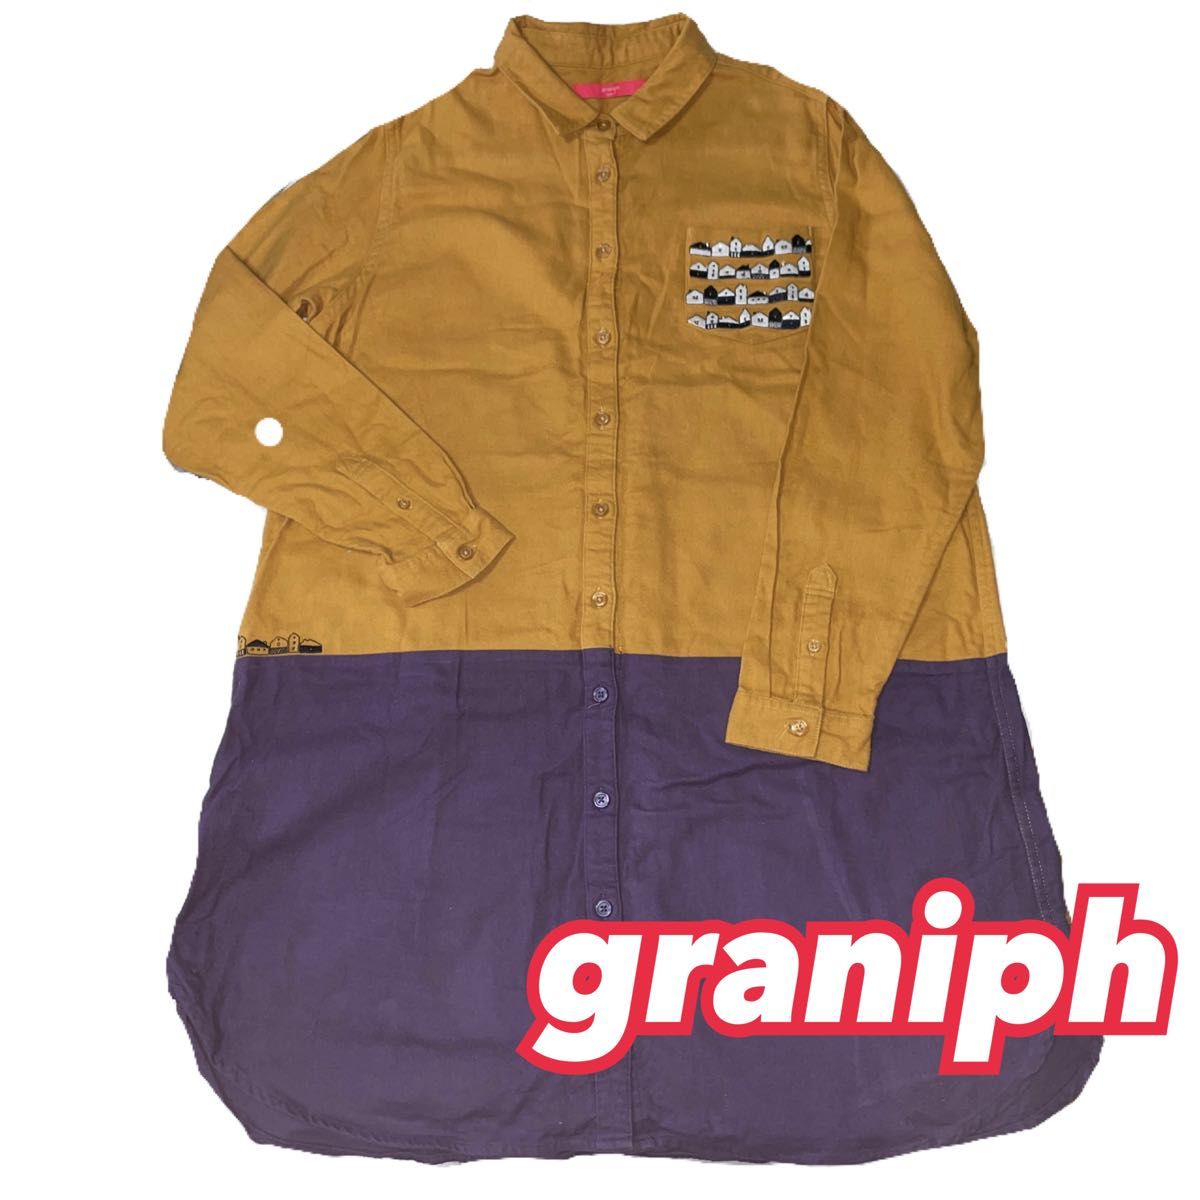 【graniph 】グラニフ ネルシャツ刺繍ワンピース 家柄 ブラウン×ダークパープル Fサイズ